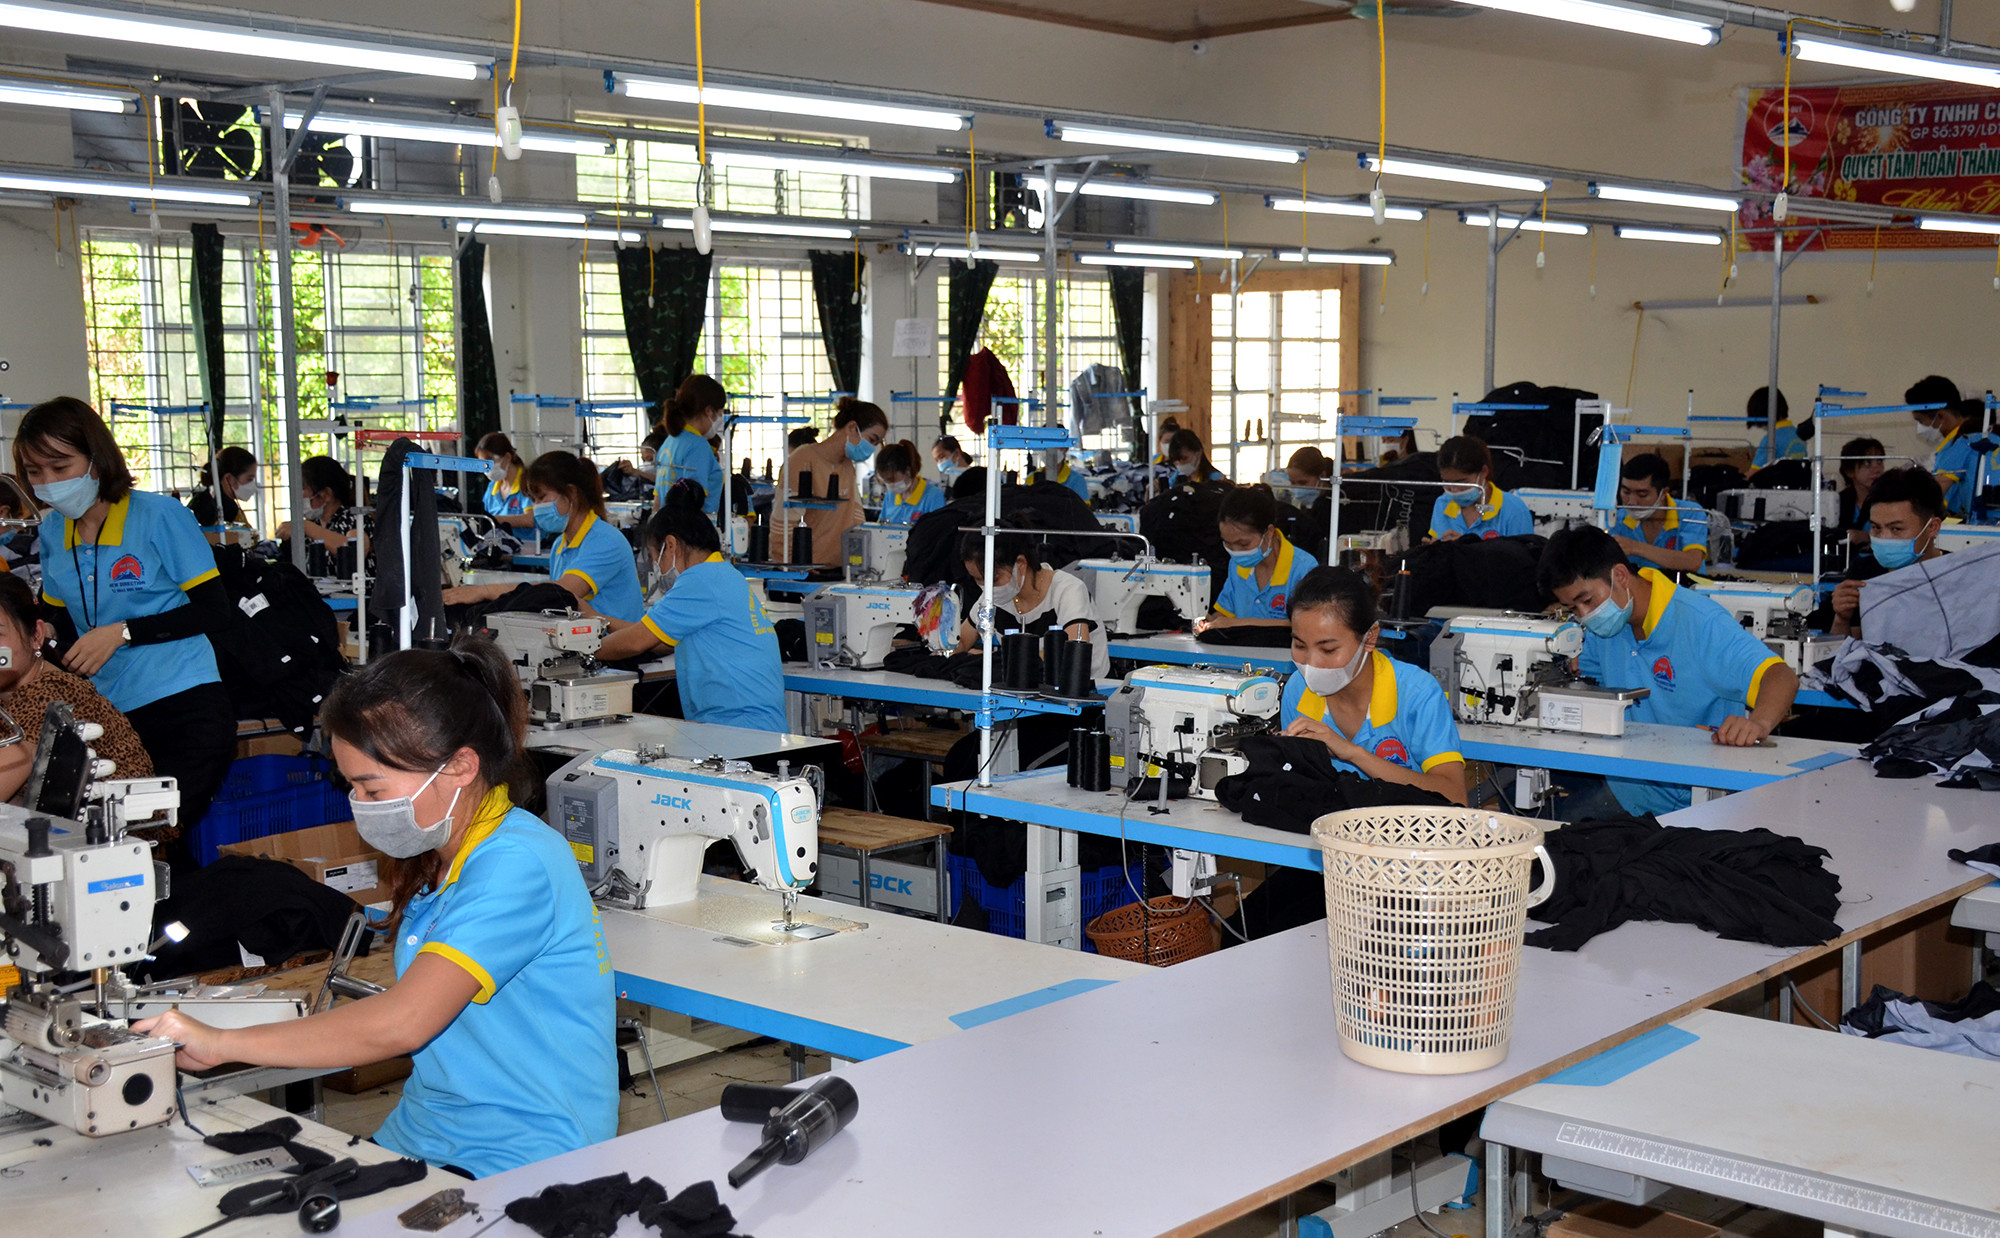 Xưởng may công nghiệp được mở tại huyện Quỳ Châu đã giải quyết việc làm cho nhiều lao động trong giai đoạn khó khăn. Ảnh: Thành Chung